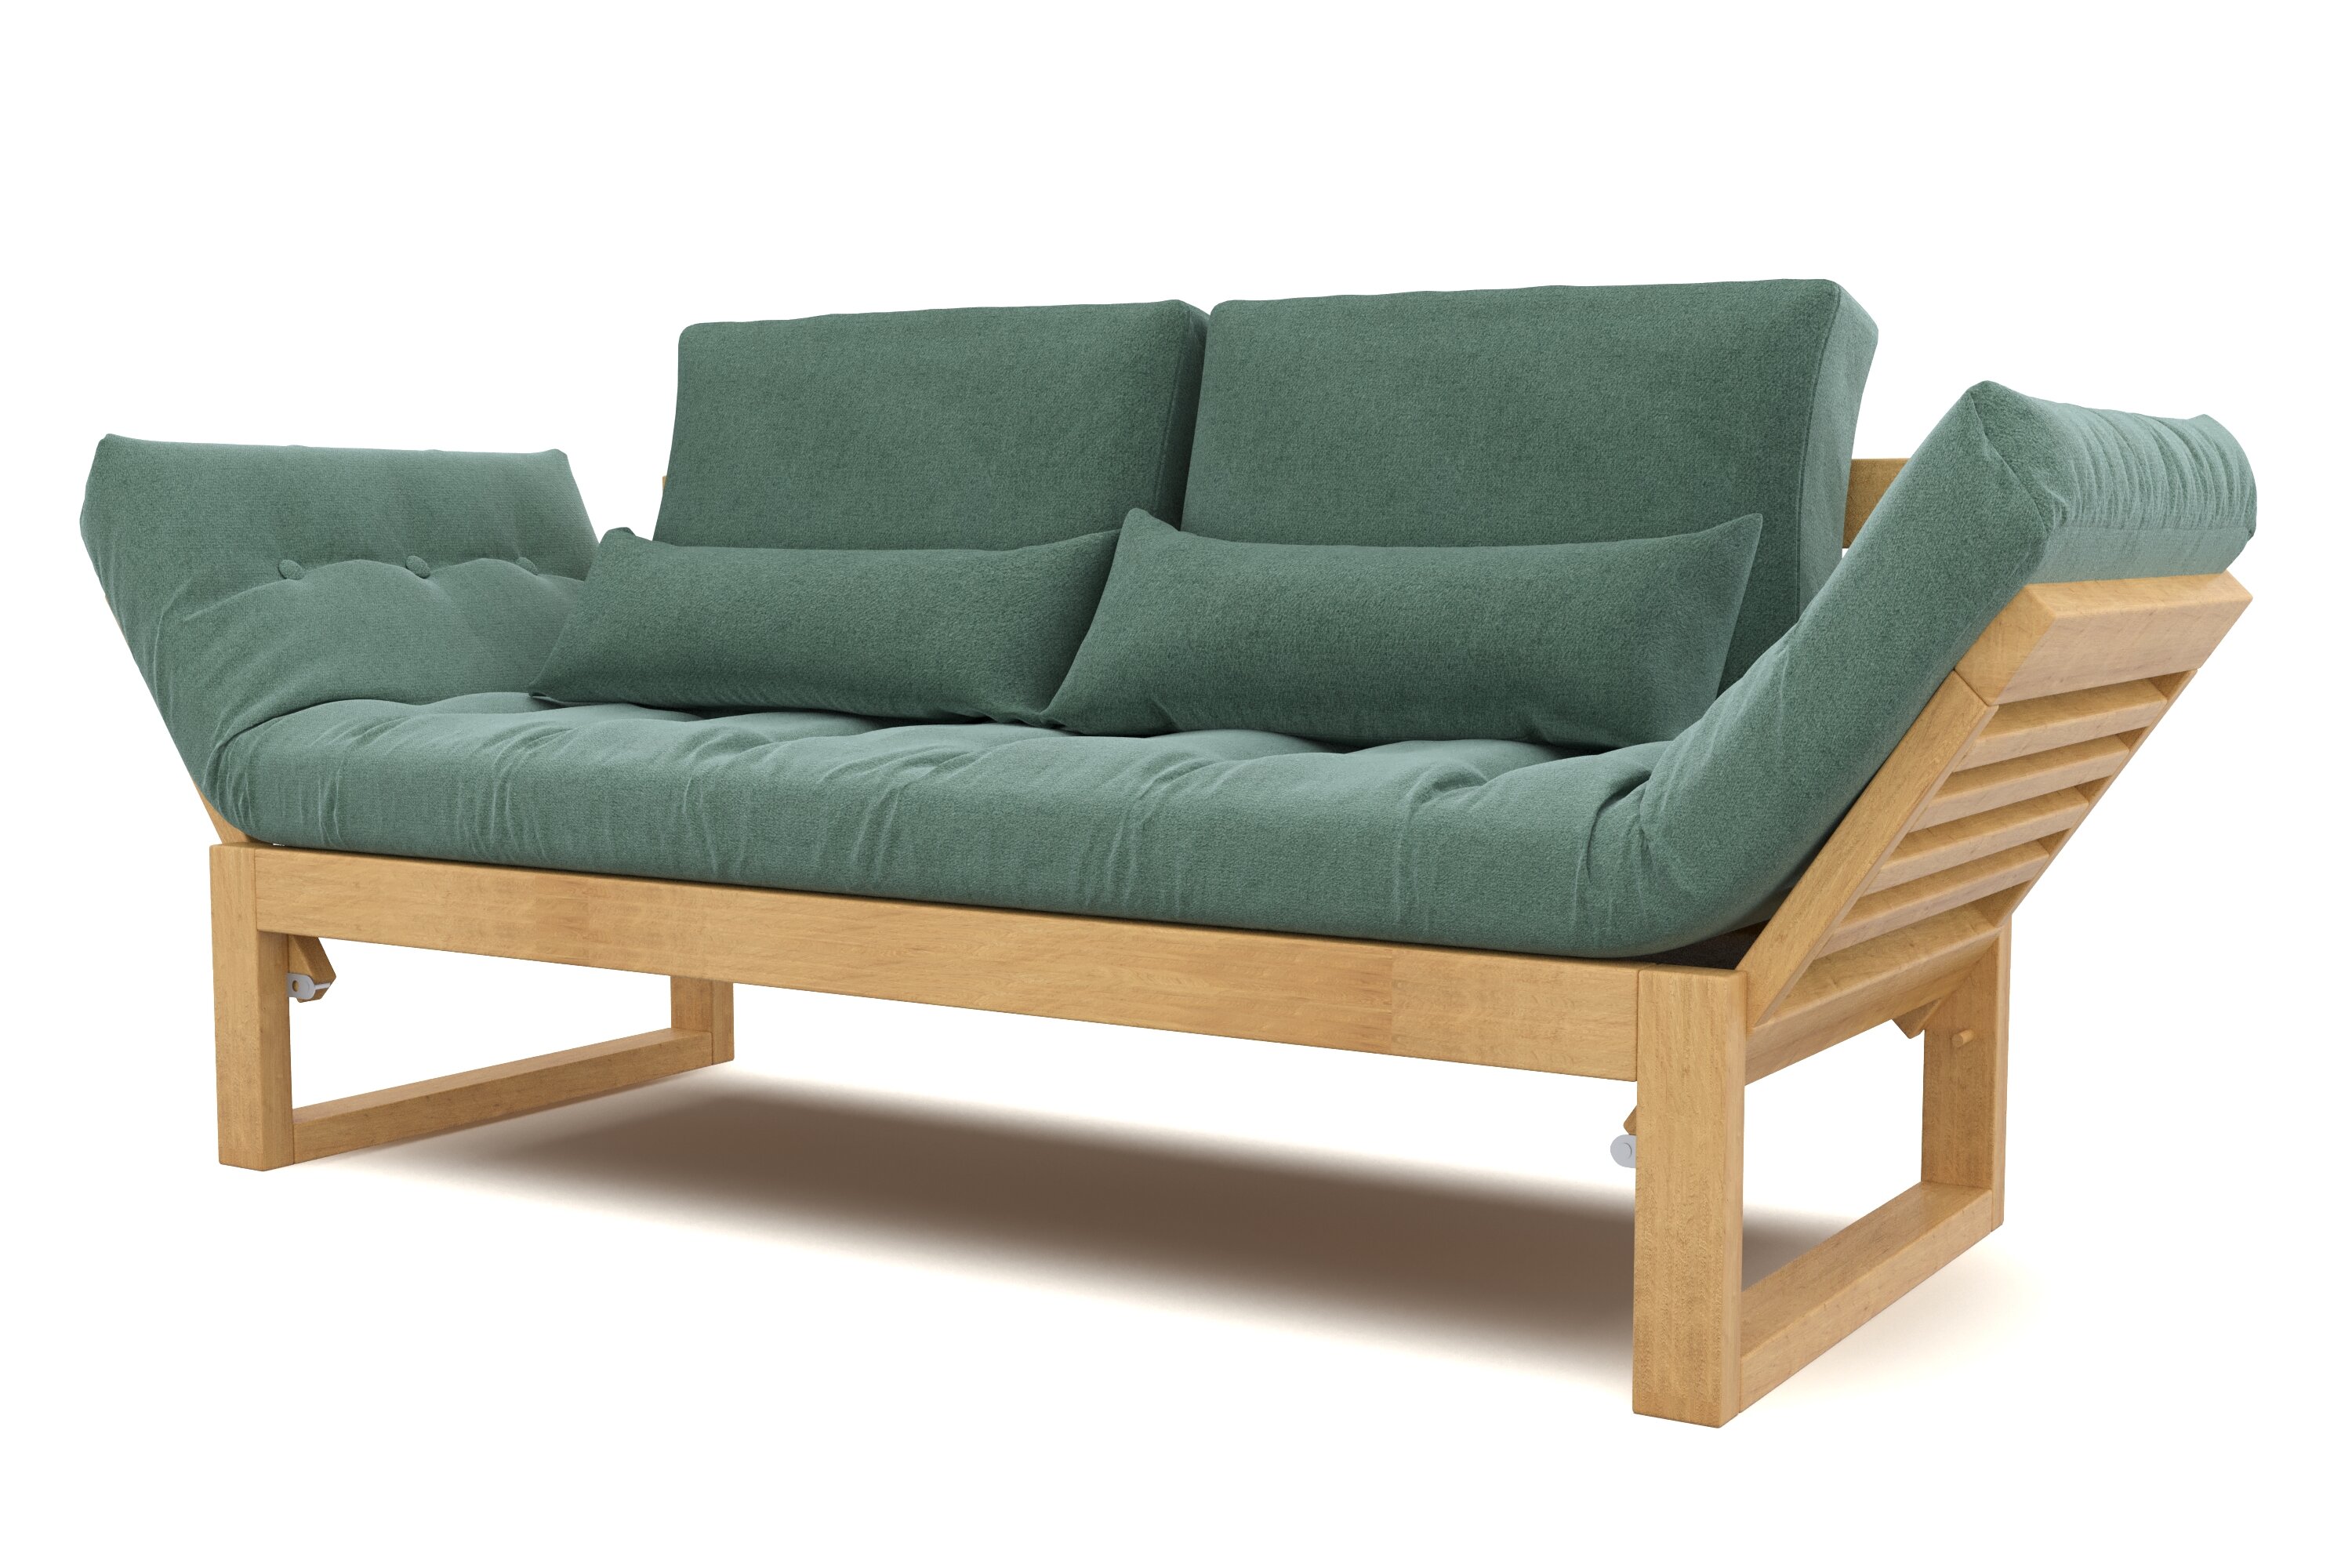 Садовый диван Soft Element Бьерк, мятный, деревянный, раскладные подлокотники, с подушками, рогожка, на террасу, на веранду, для дачи, для бани